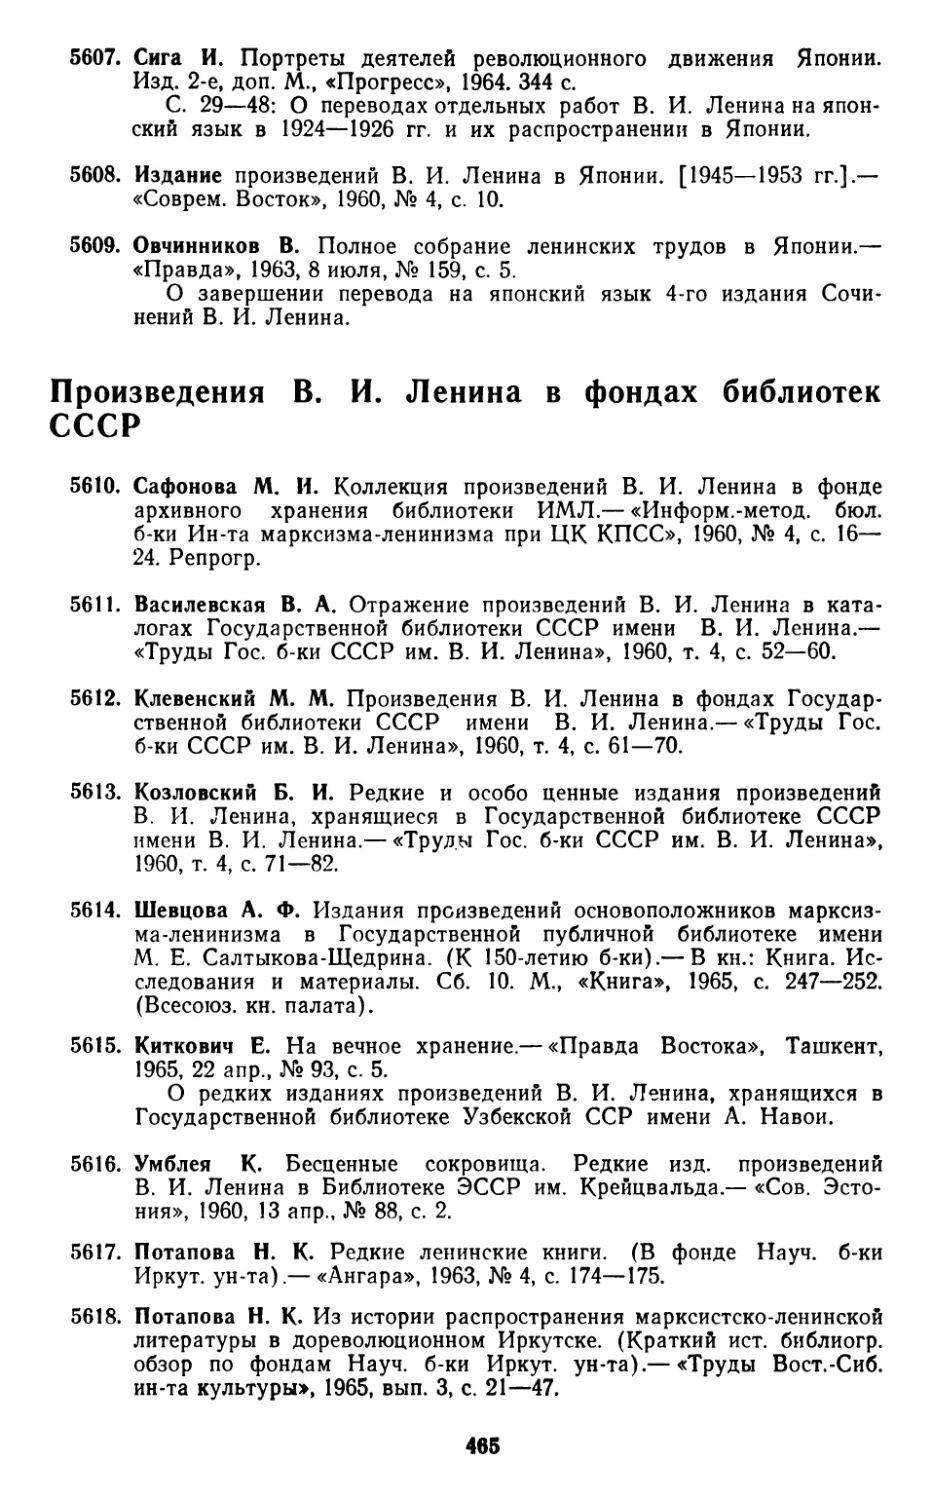 Произведения В. И. Ленина в фондах библиотек СССР